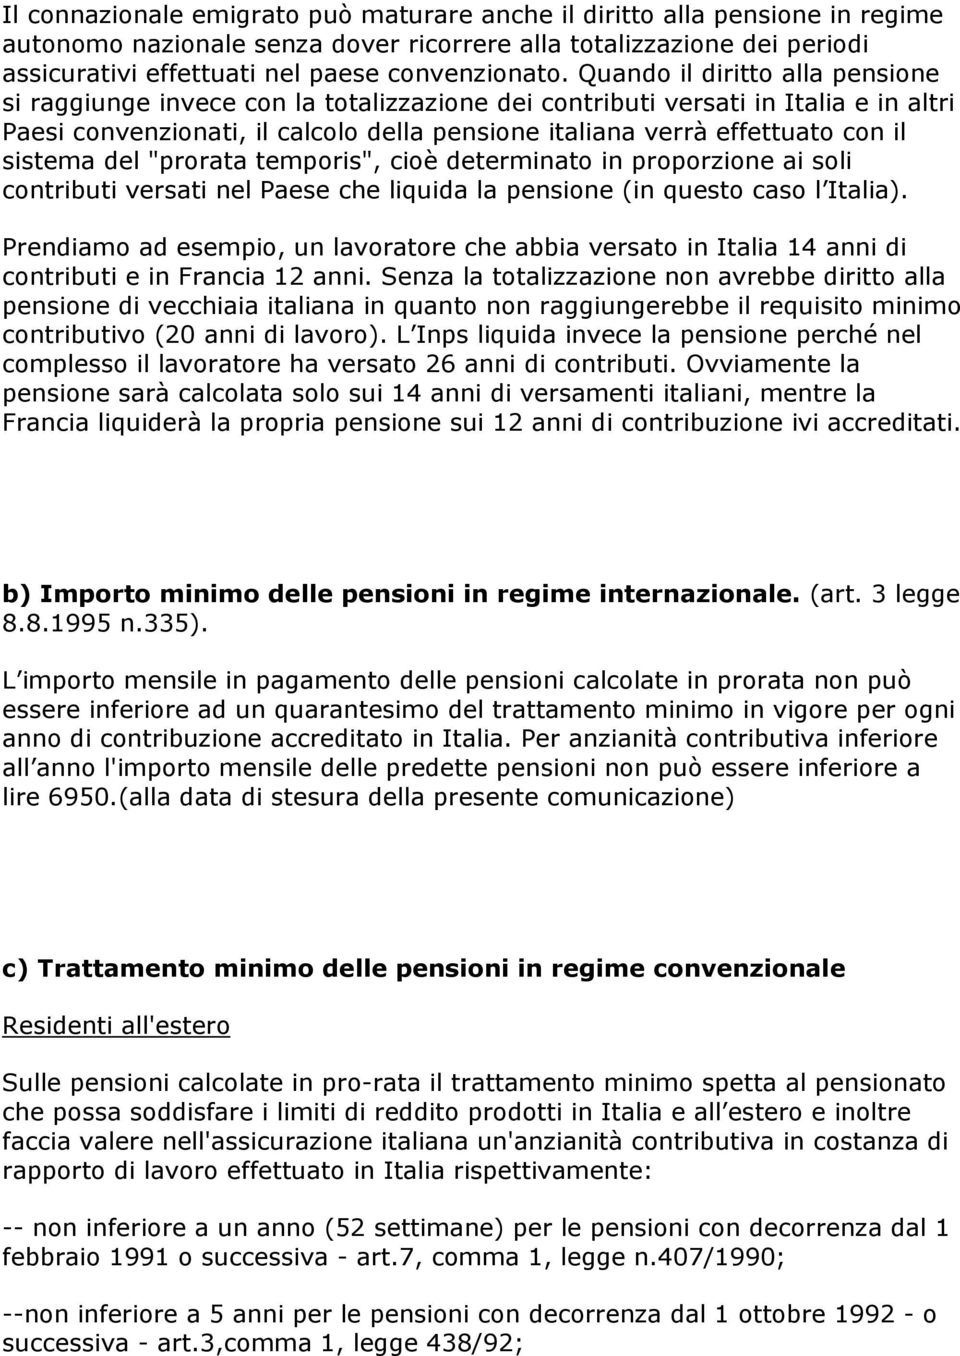 sistema del "prorata temporis", cioè determinato in proporzione ai soli contributi versati nel Paese che liquida la pensione (in questo caso l Italia).